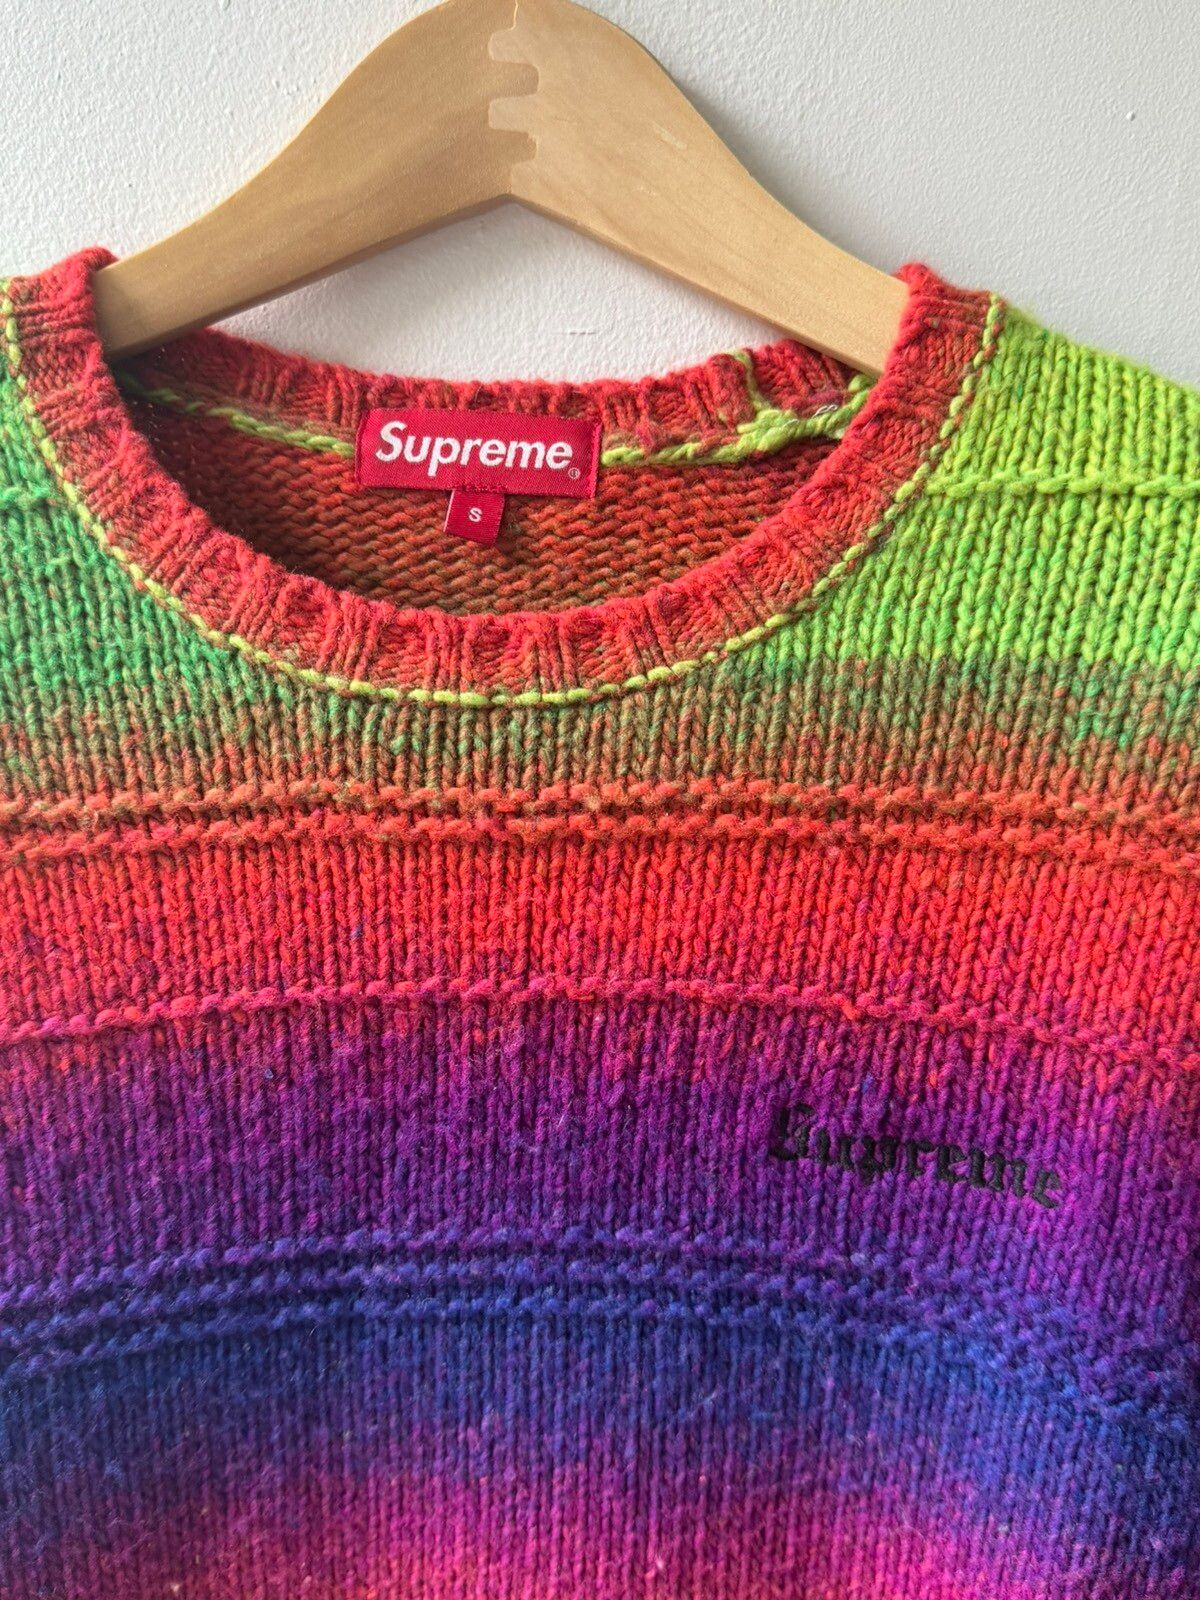 Supreme Supreme Gradient Stripe Sweater | Grailed